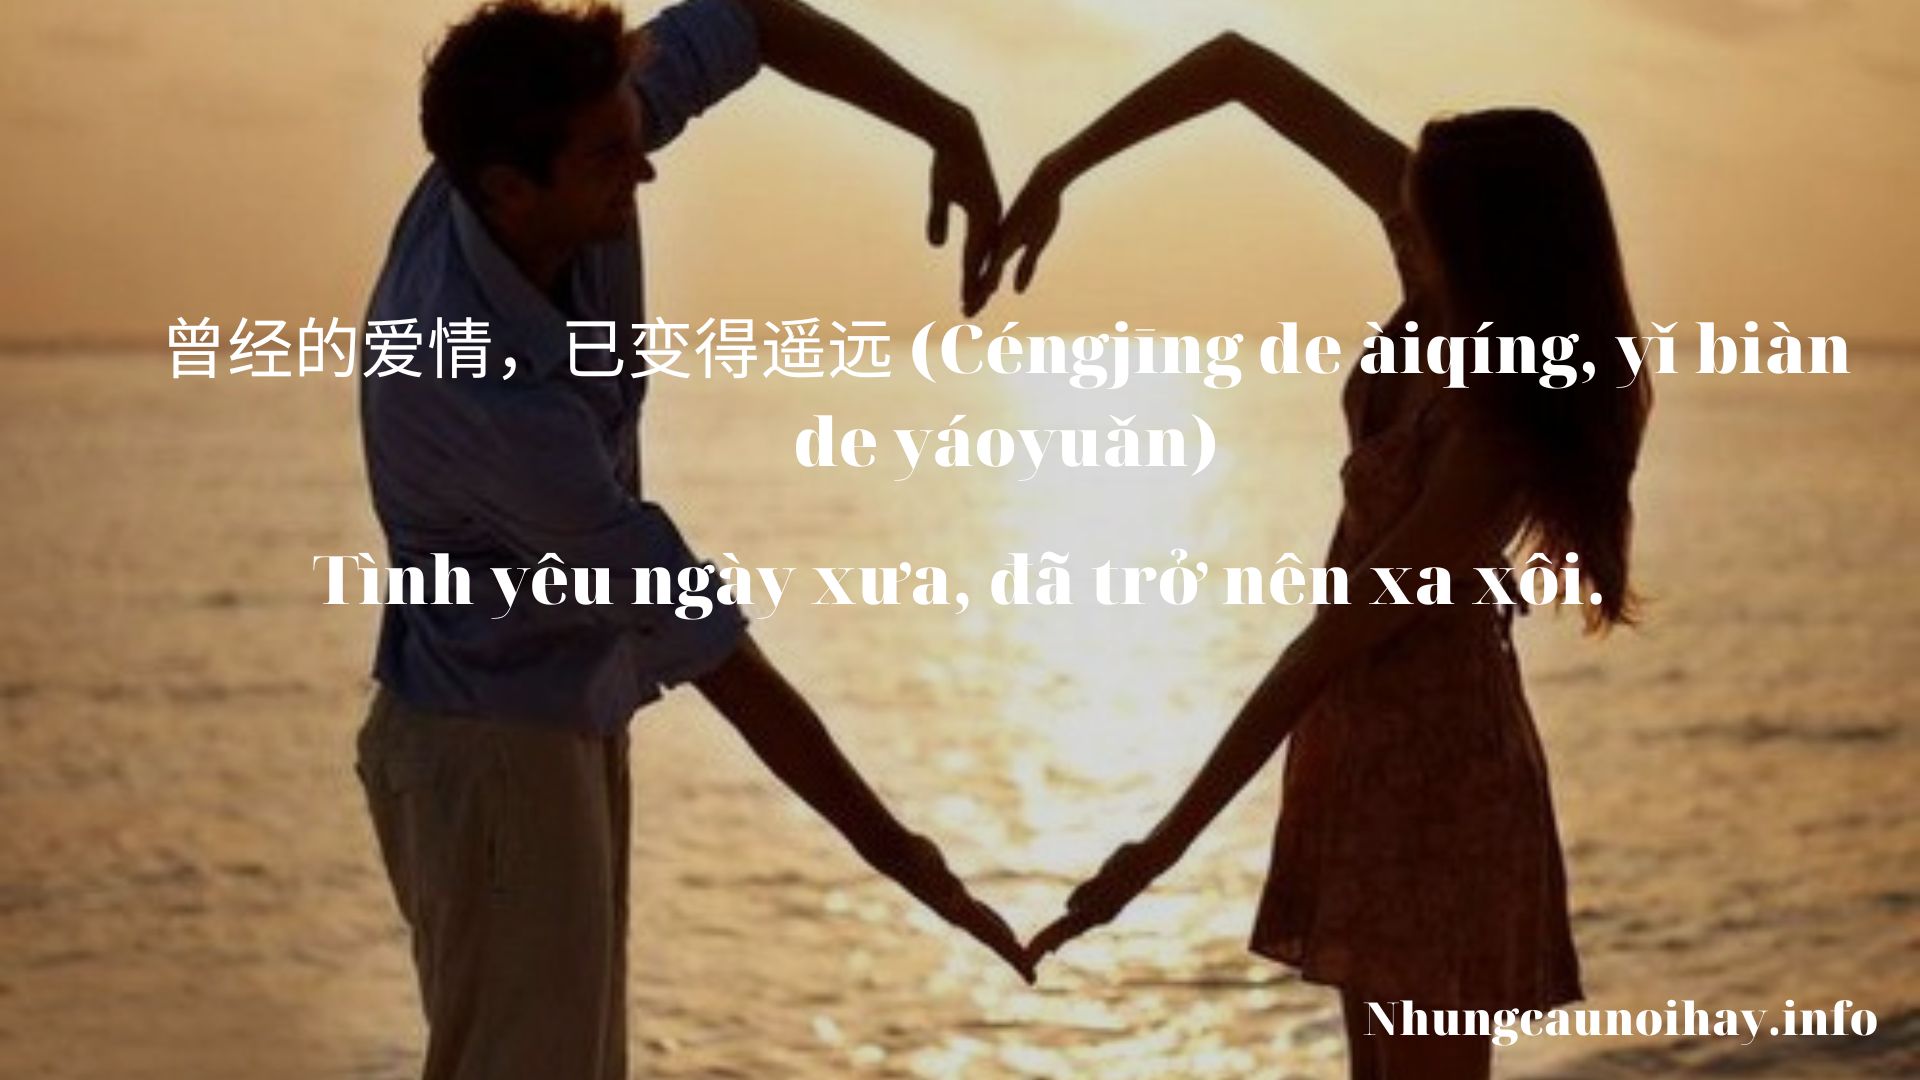 STT tiếng Trung buồn về tình yêu